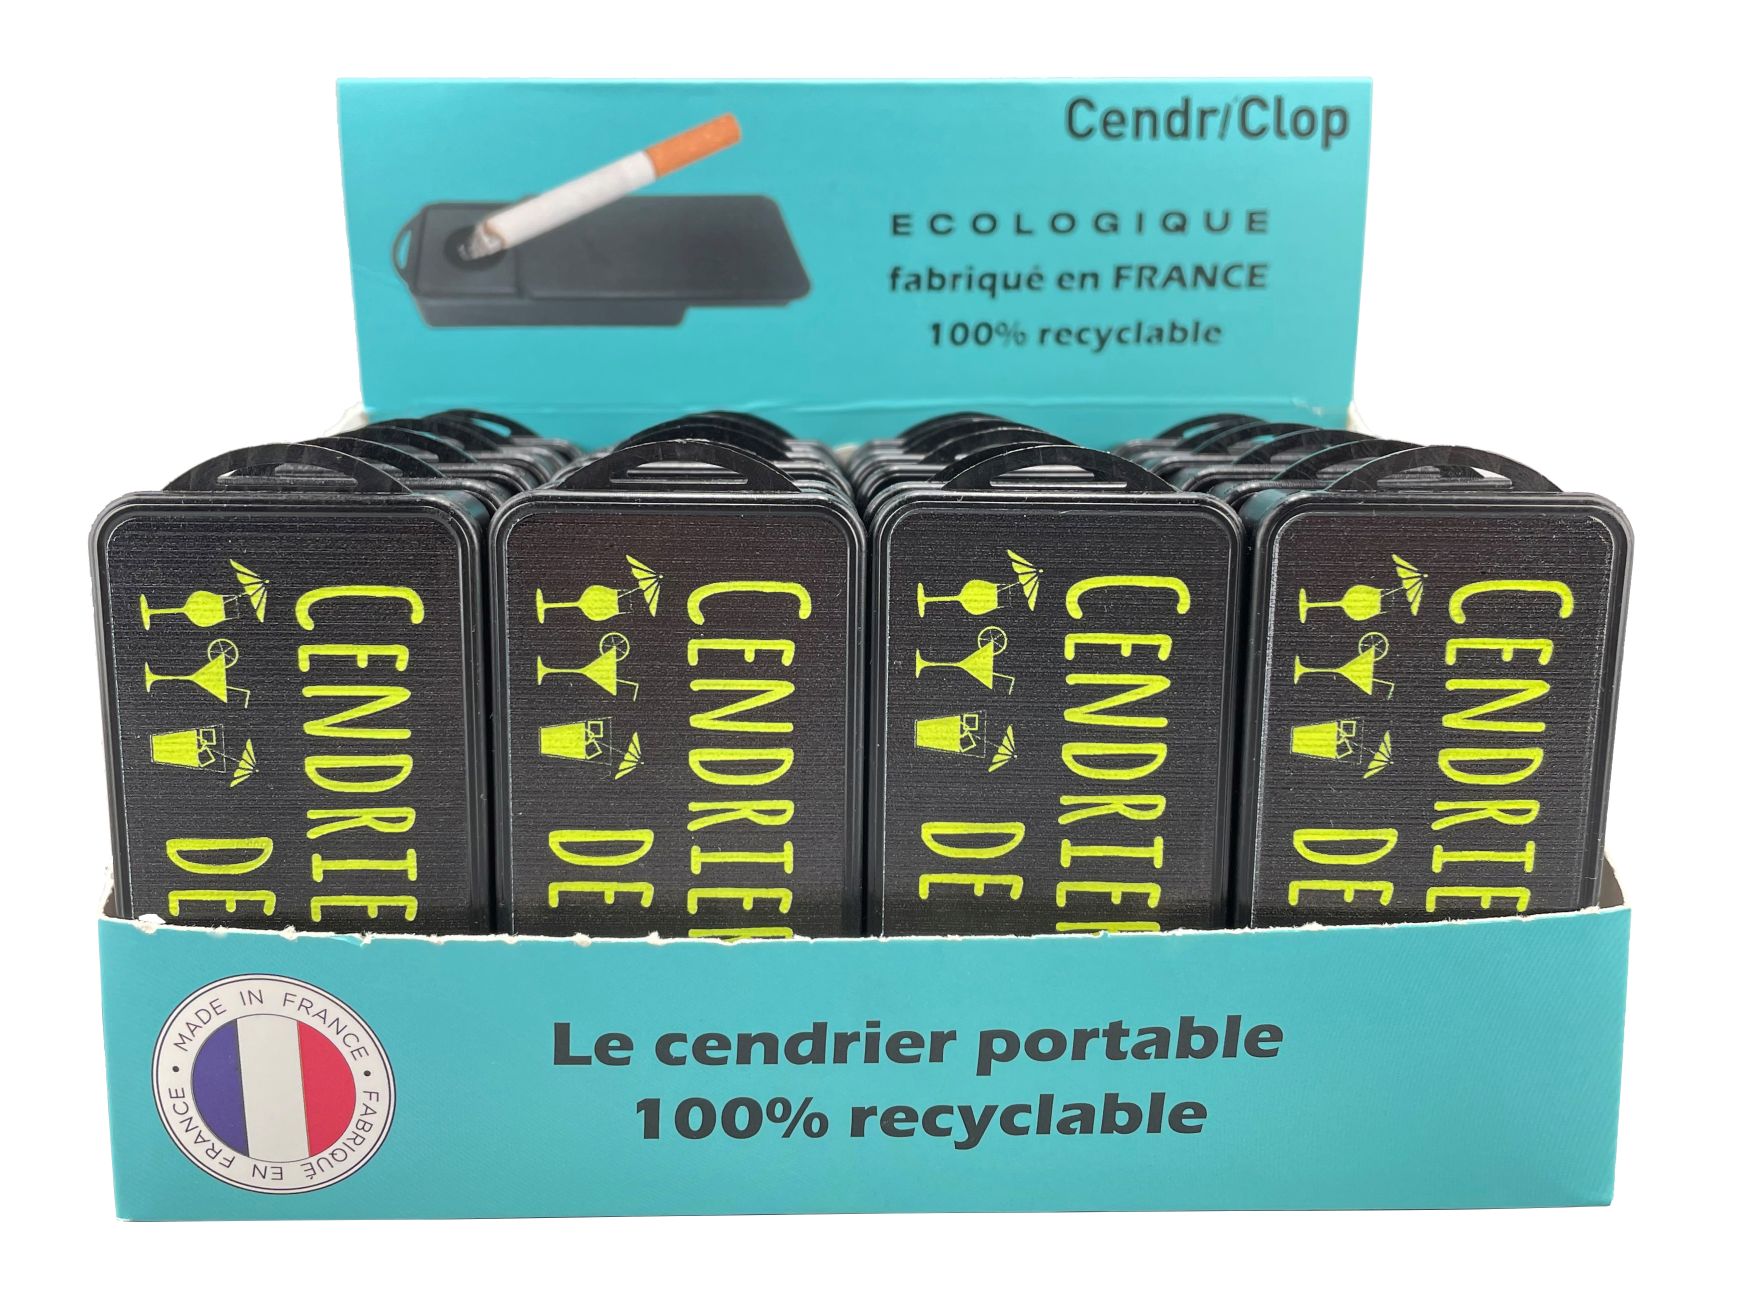  Cendriclop le cendrier portable 100% recyclable décors Plage Jaune Fluo